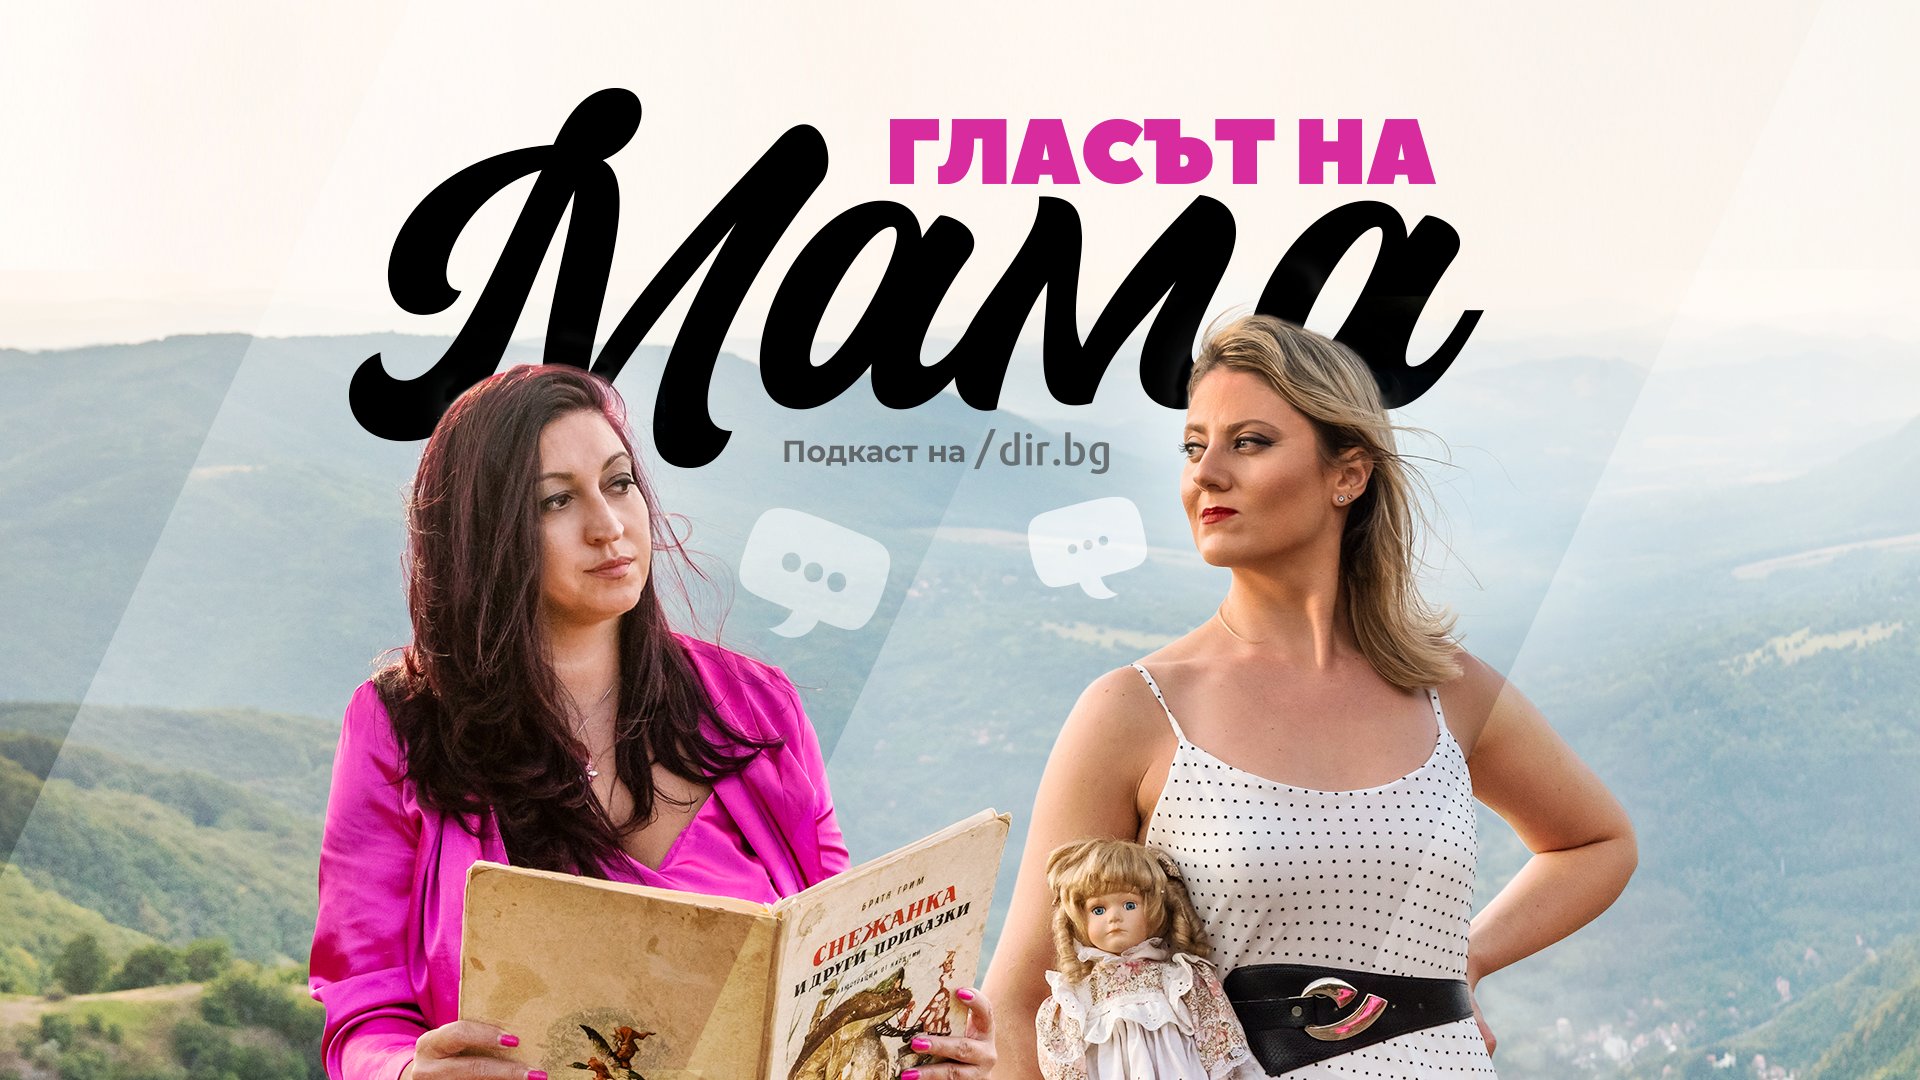 "Гласът на мама" е новият подкаст на Dir.bg 